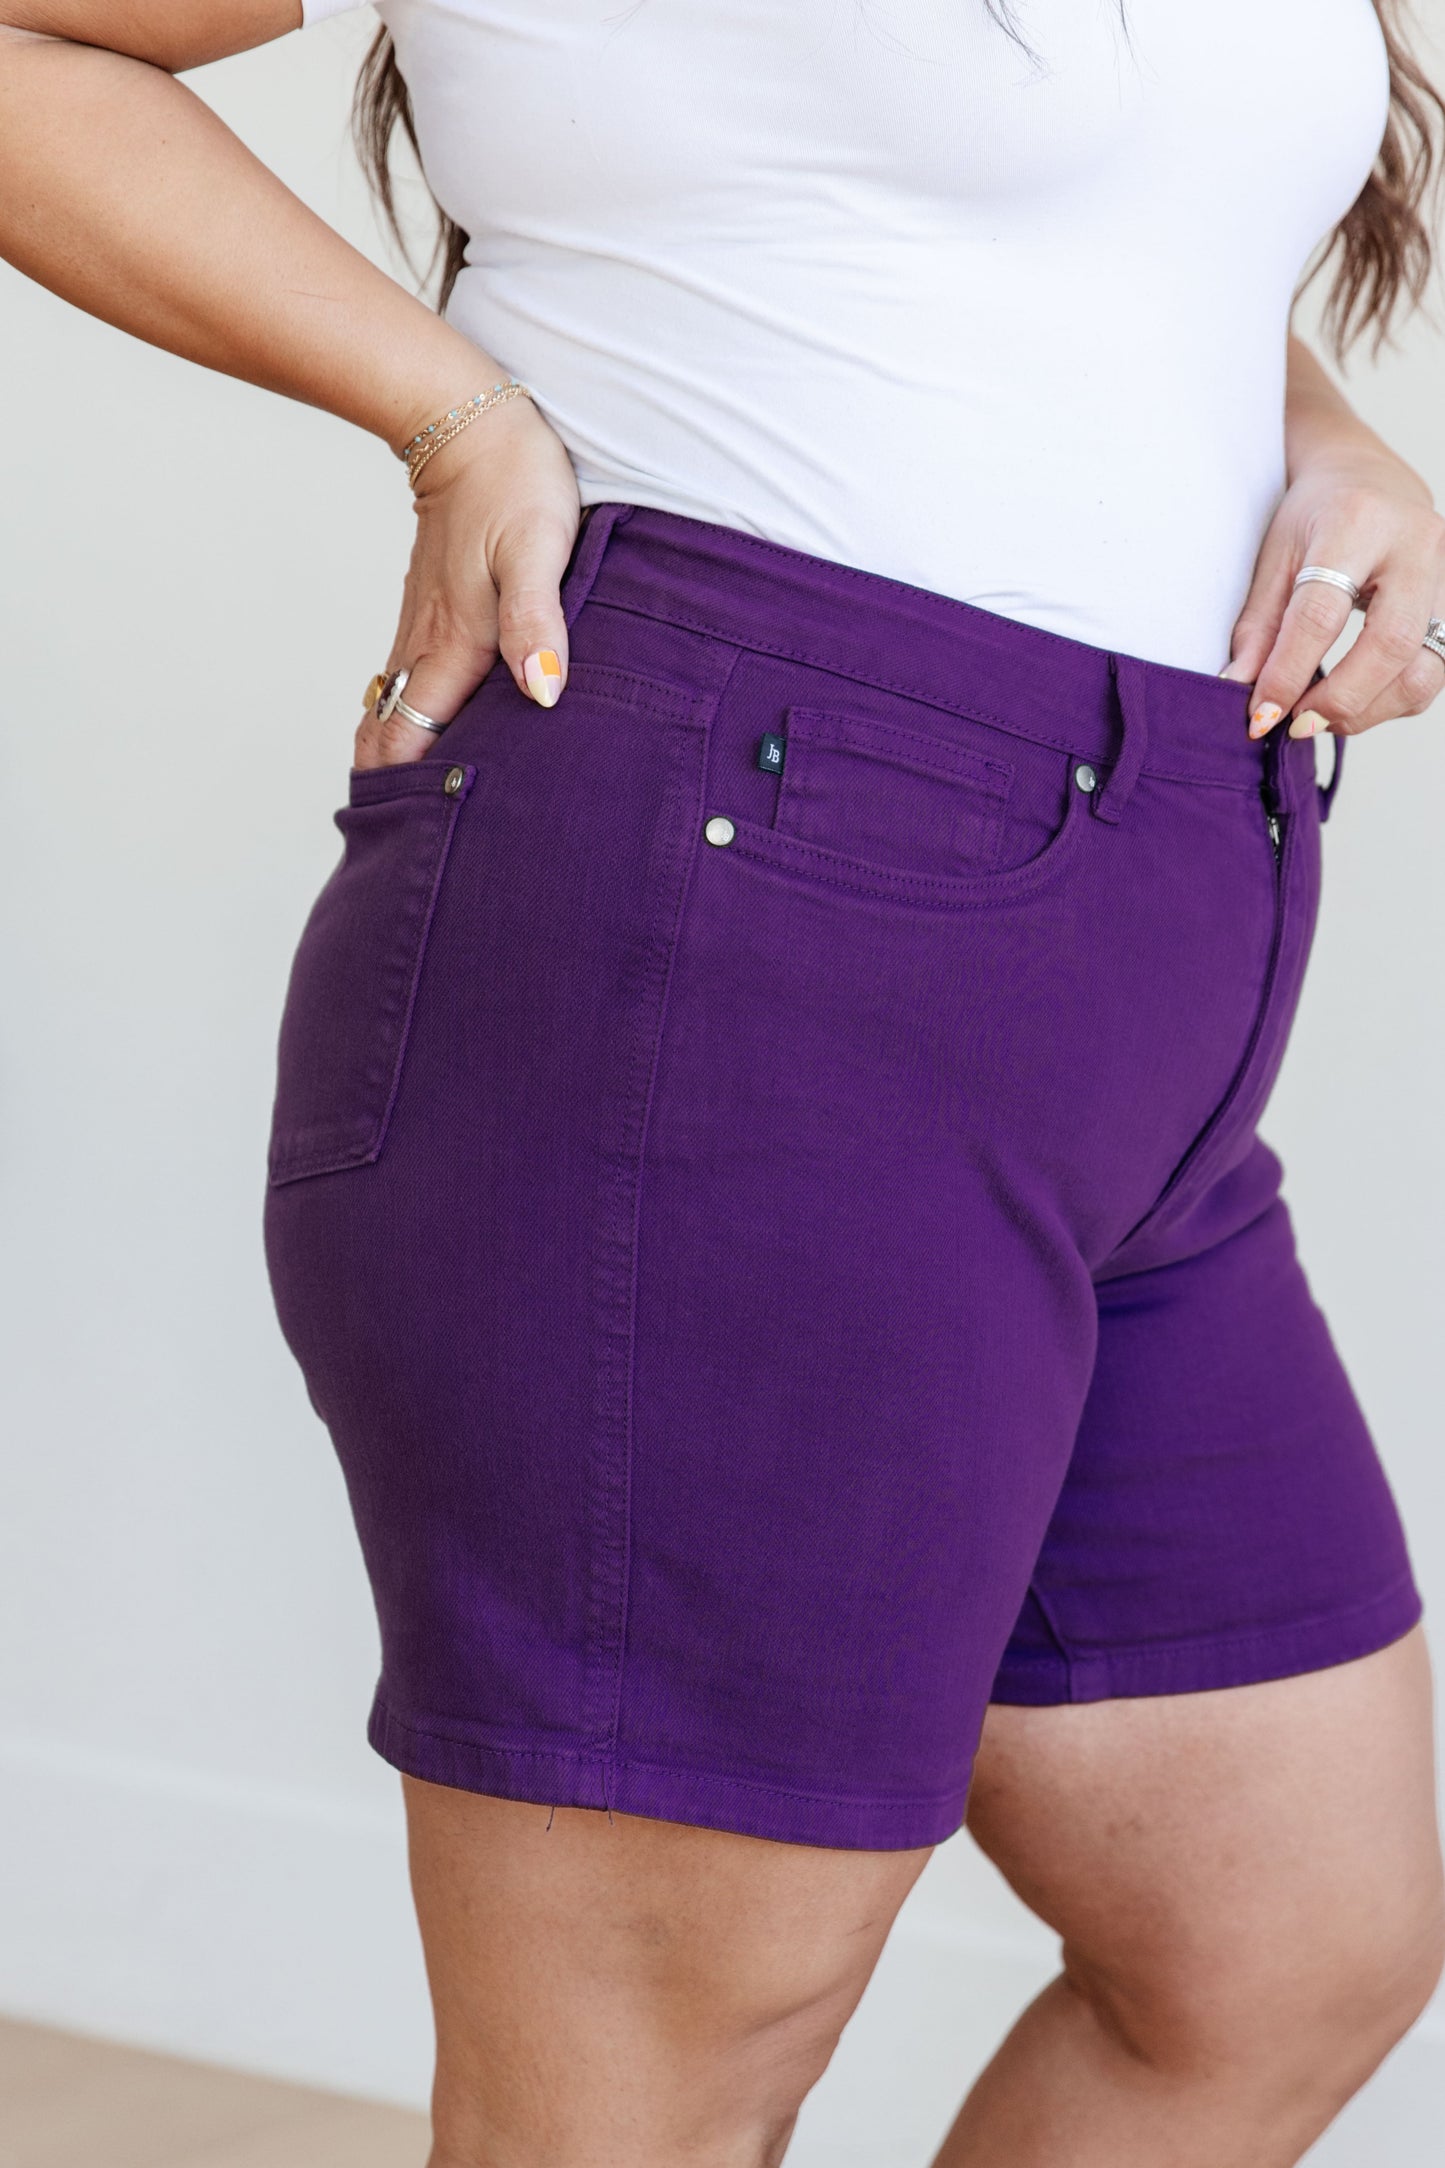 Judy Blue High Rise Control Top Cuffed Shorts in Purple